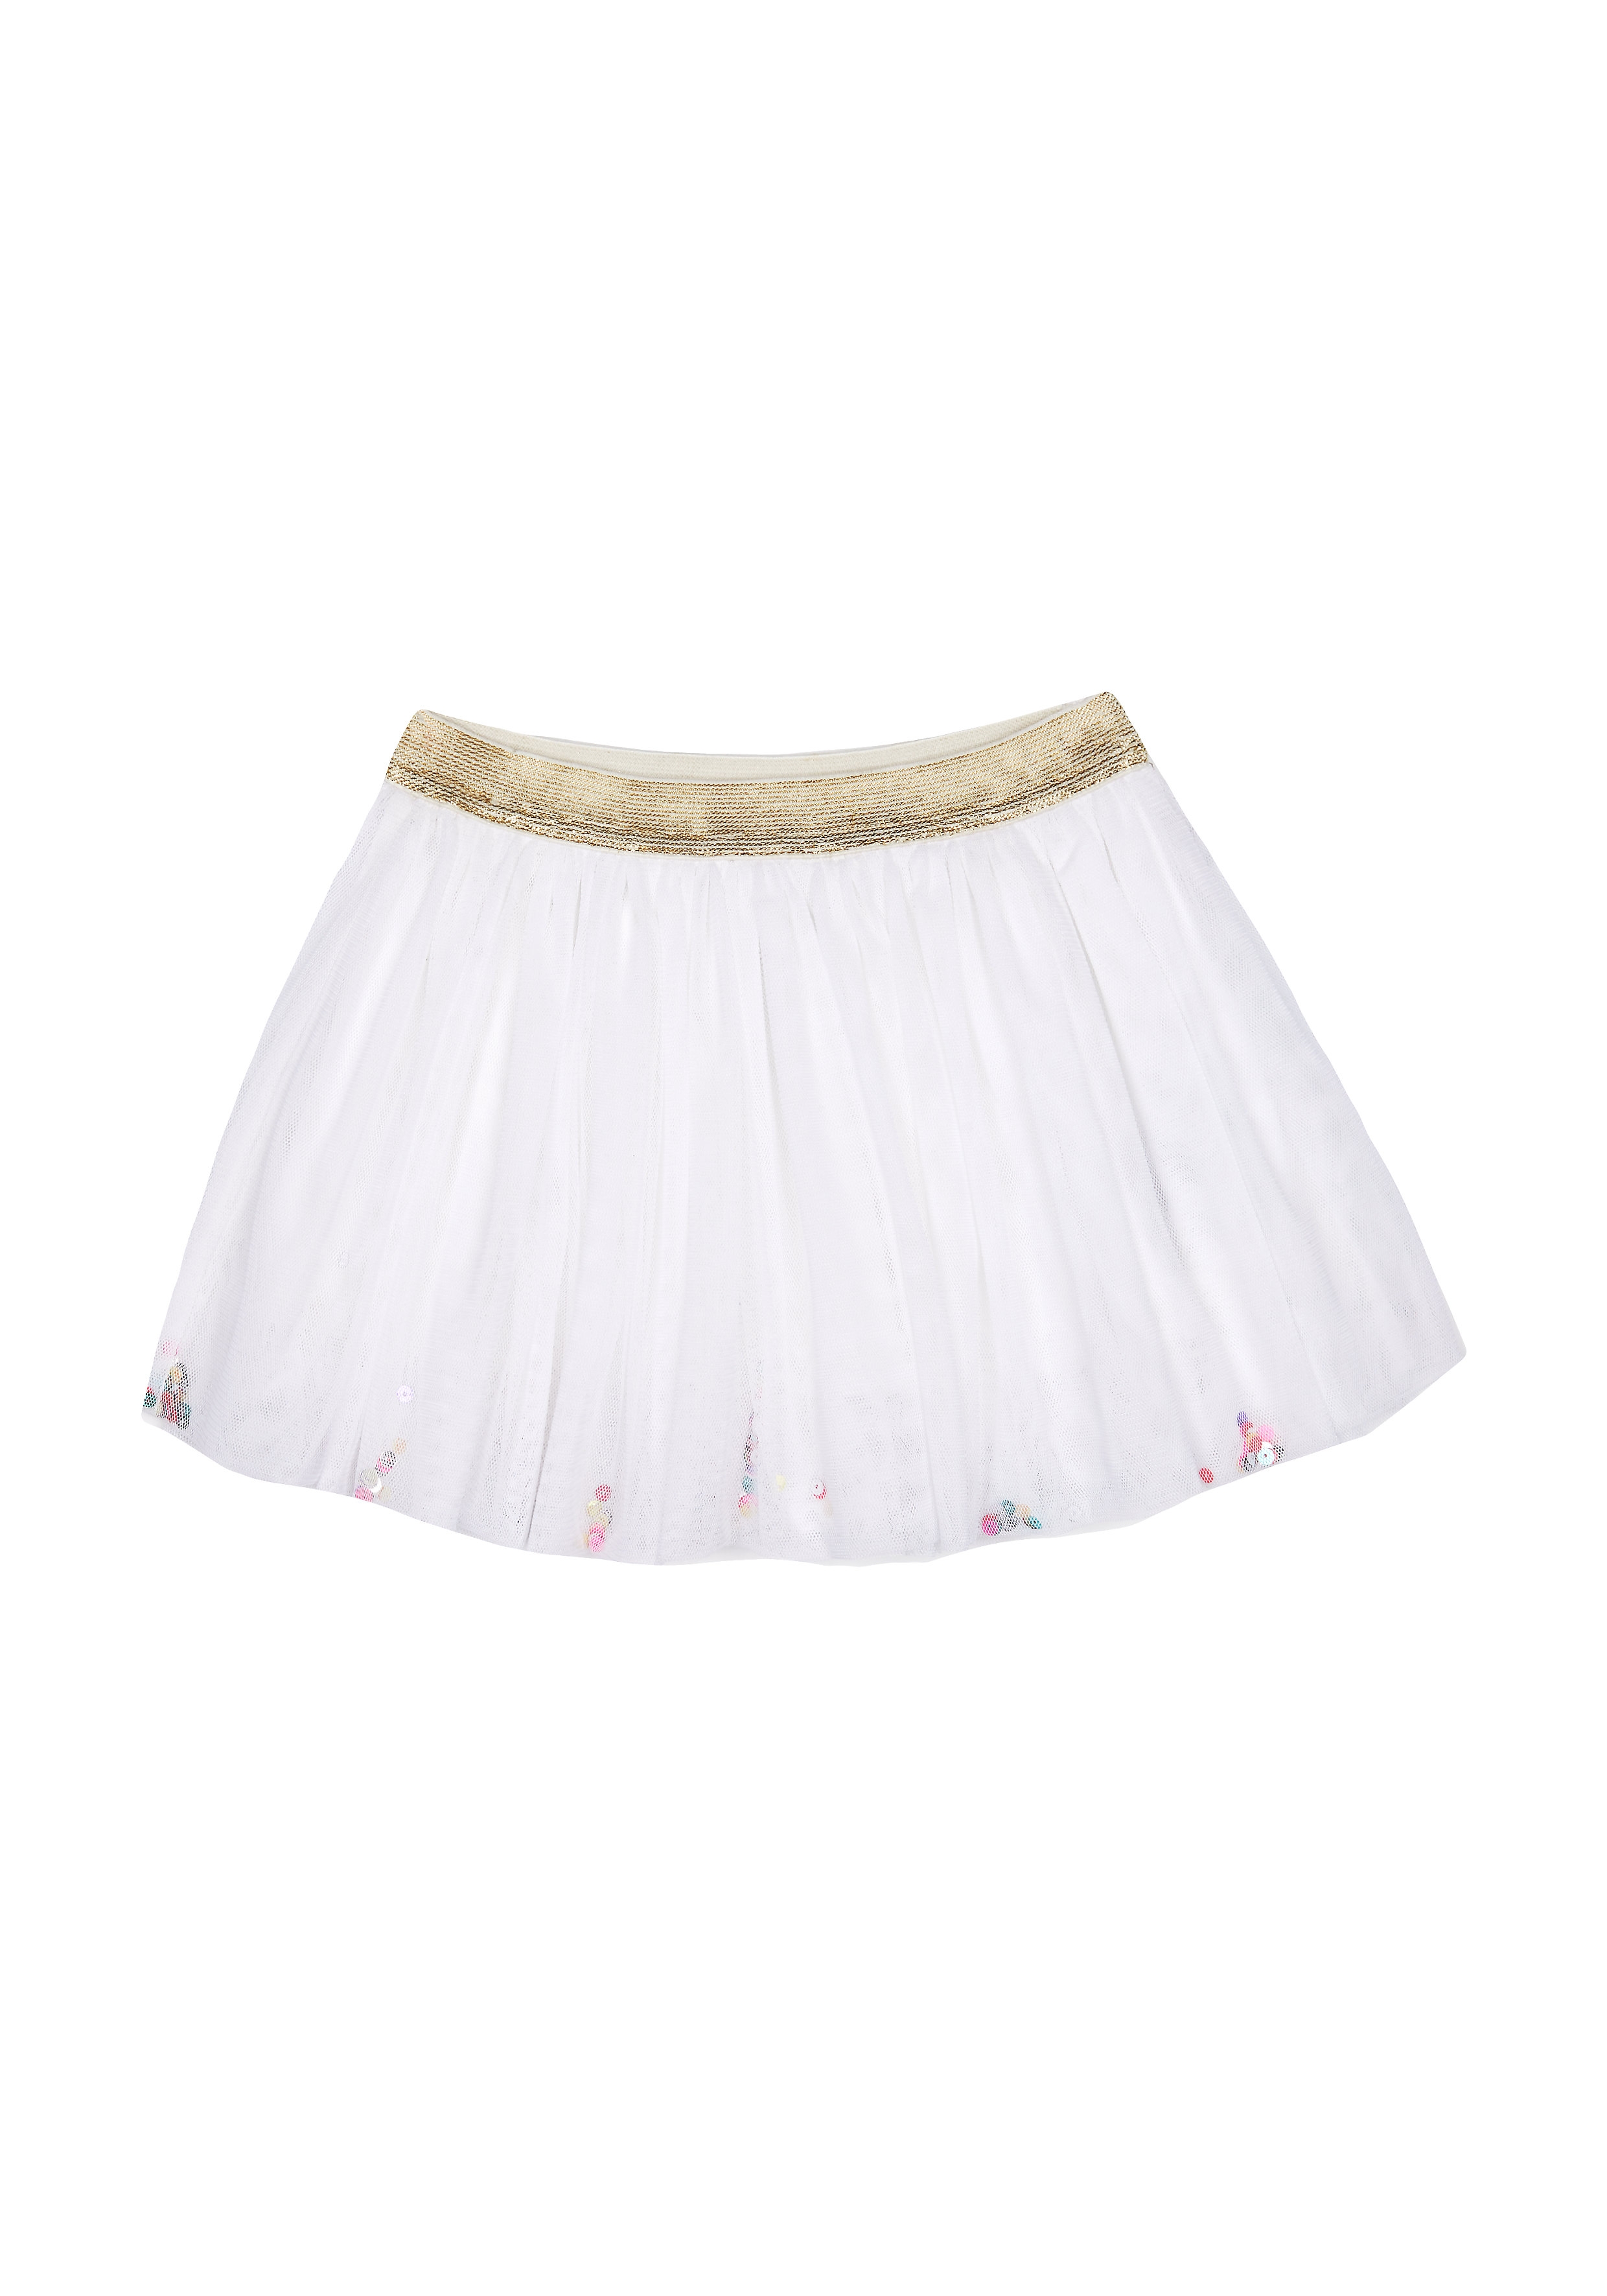 Mothercare | Girls Sequin Mesh Skirt - White